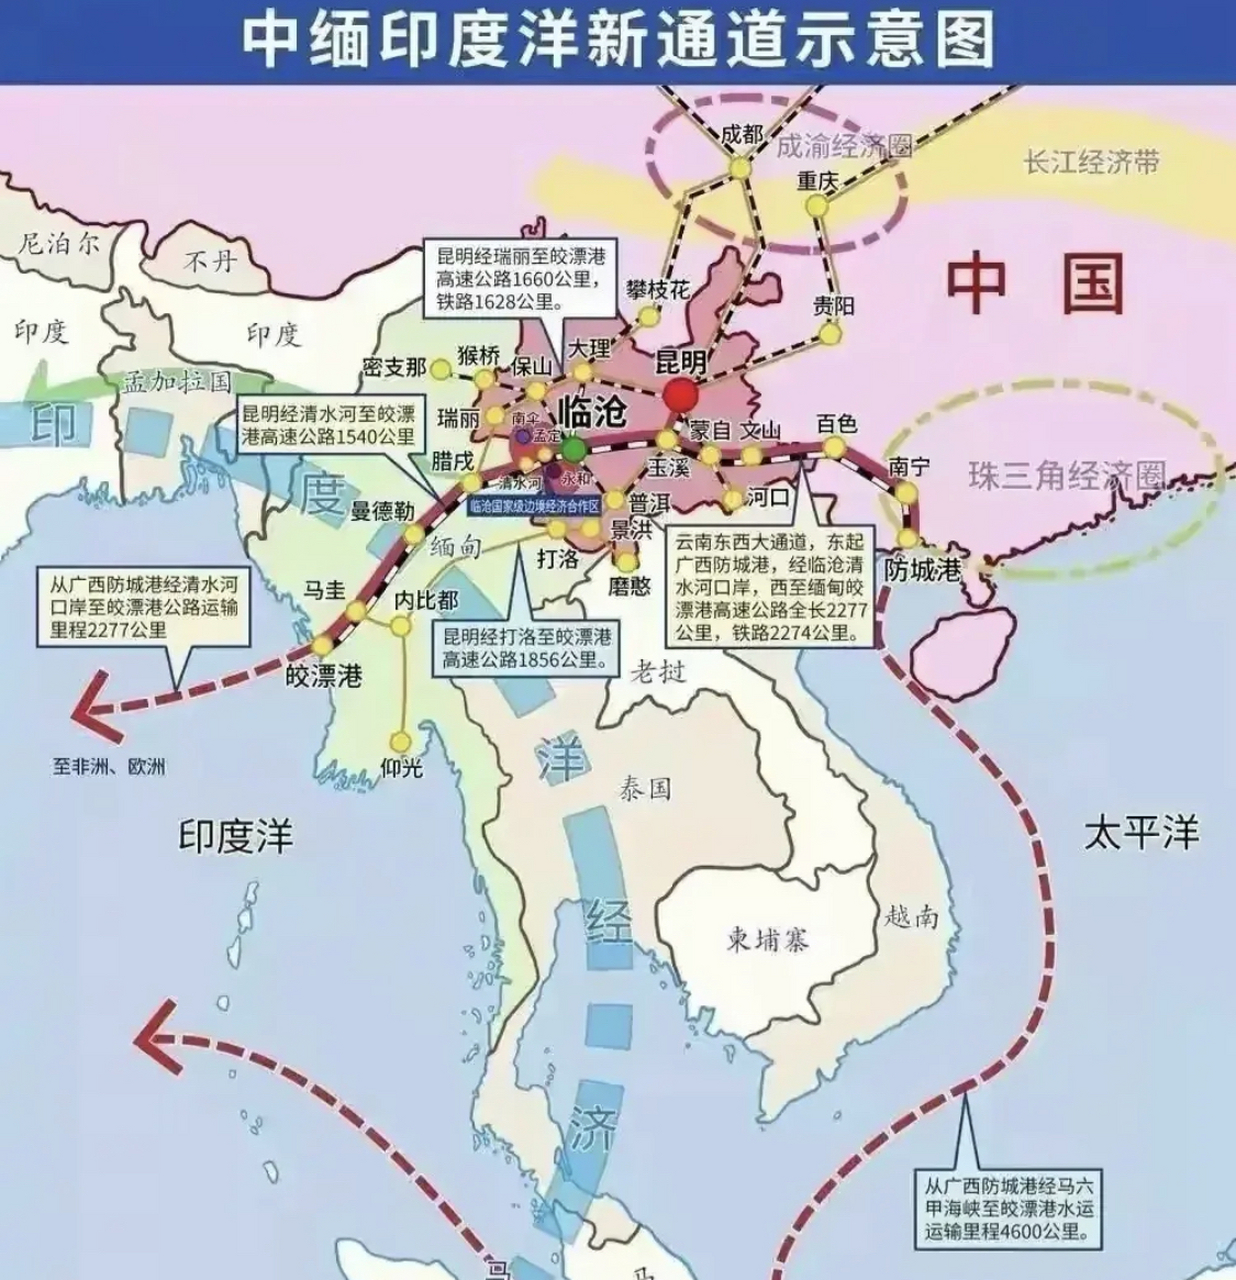 正在推动建设的中缅铁路如果修通,通过从皎漂港进入中国临沧清水河